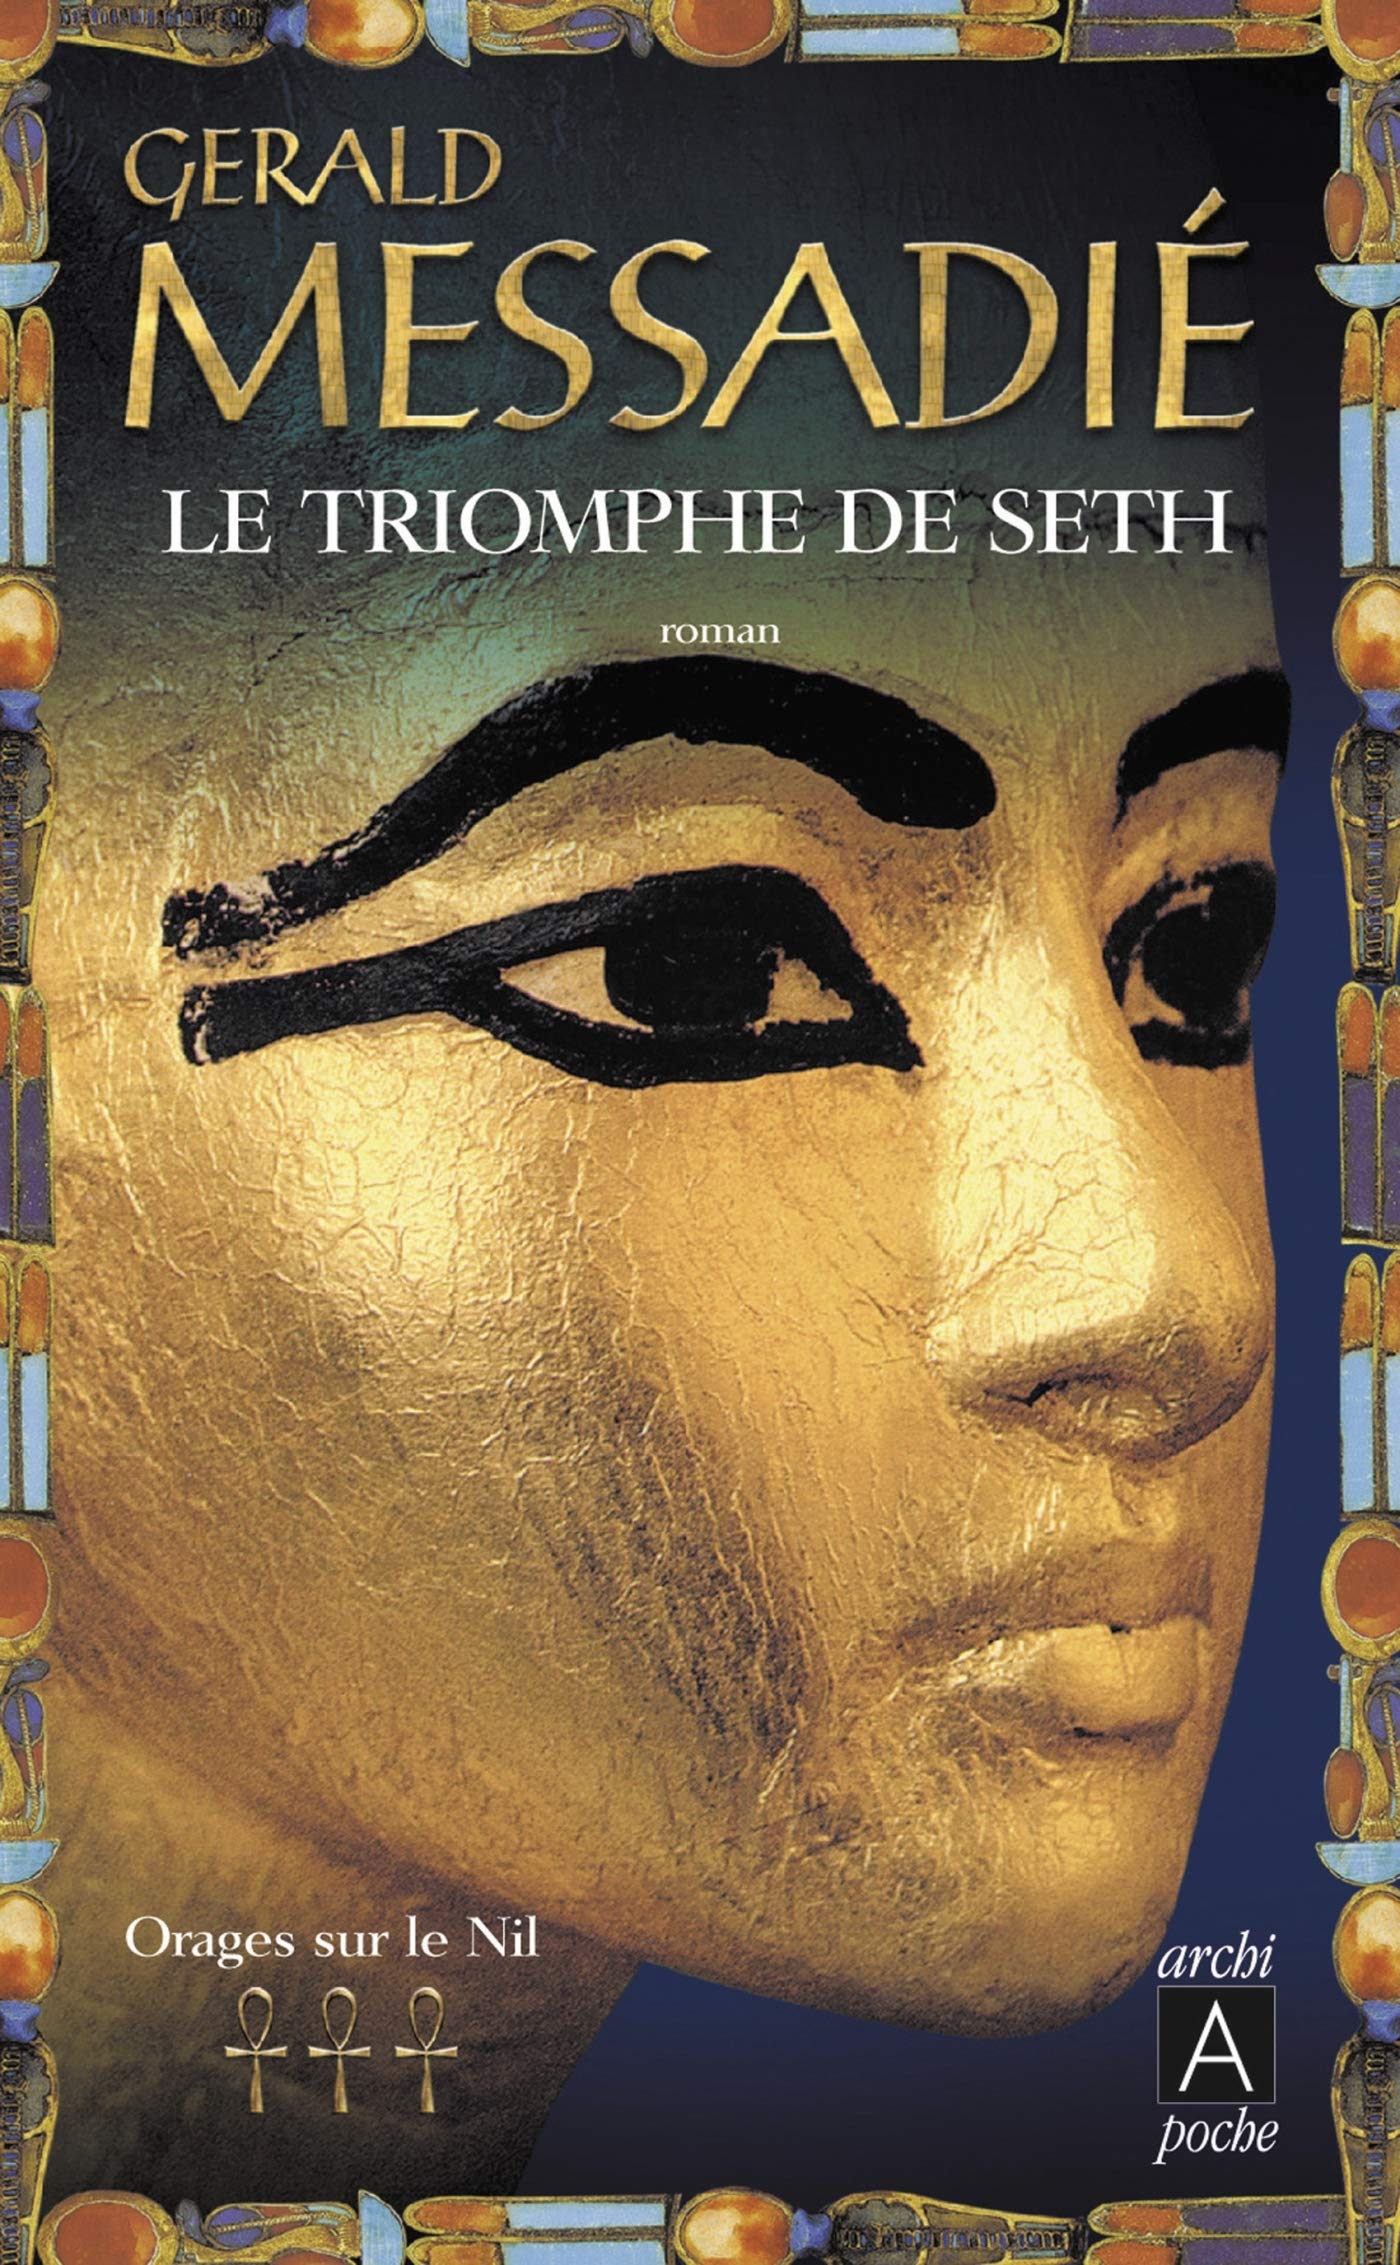 Livre ISBN 2352870313 Orages sur le Nil # 3 : Le triomphe de Seth (Gerald Messadié)